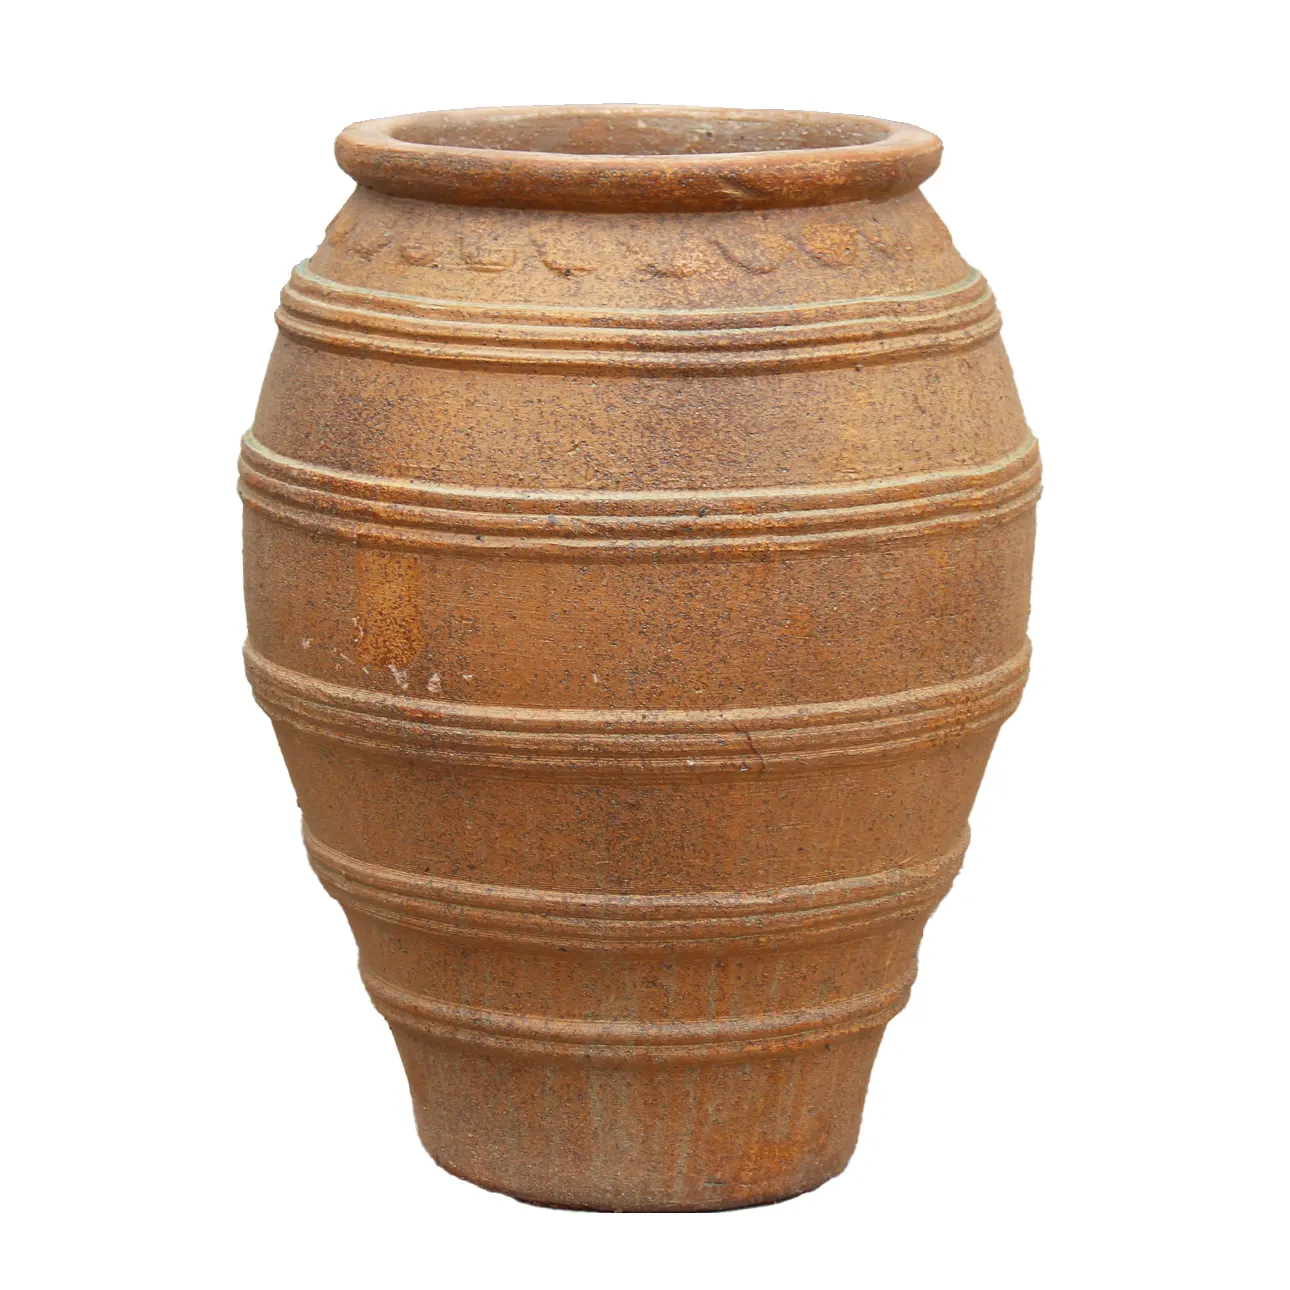 Pot de fleur décoratif en céramique moderne bon marché en gros et pots en terre cuite avec logo